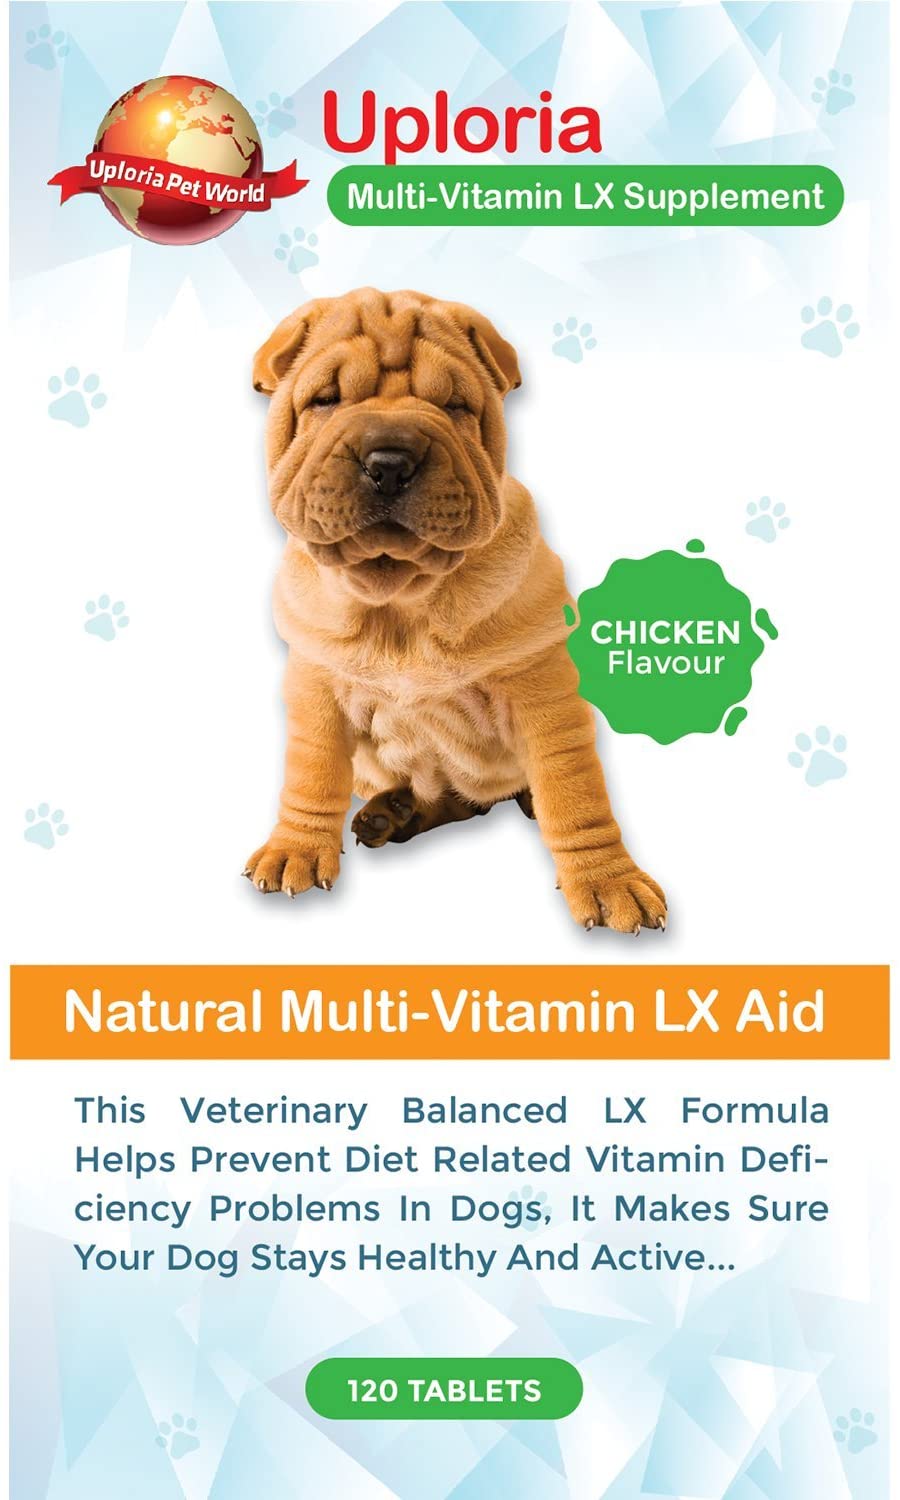  Preparado Multivitamínico Para Perros - 120 Comprimidos Masticables Con Sabor A Pollo | Estas Vitaminas Y Suplementos Para Perros Le Aseguran De Que Su Perro Se Mantenga Sano Y Activo 